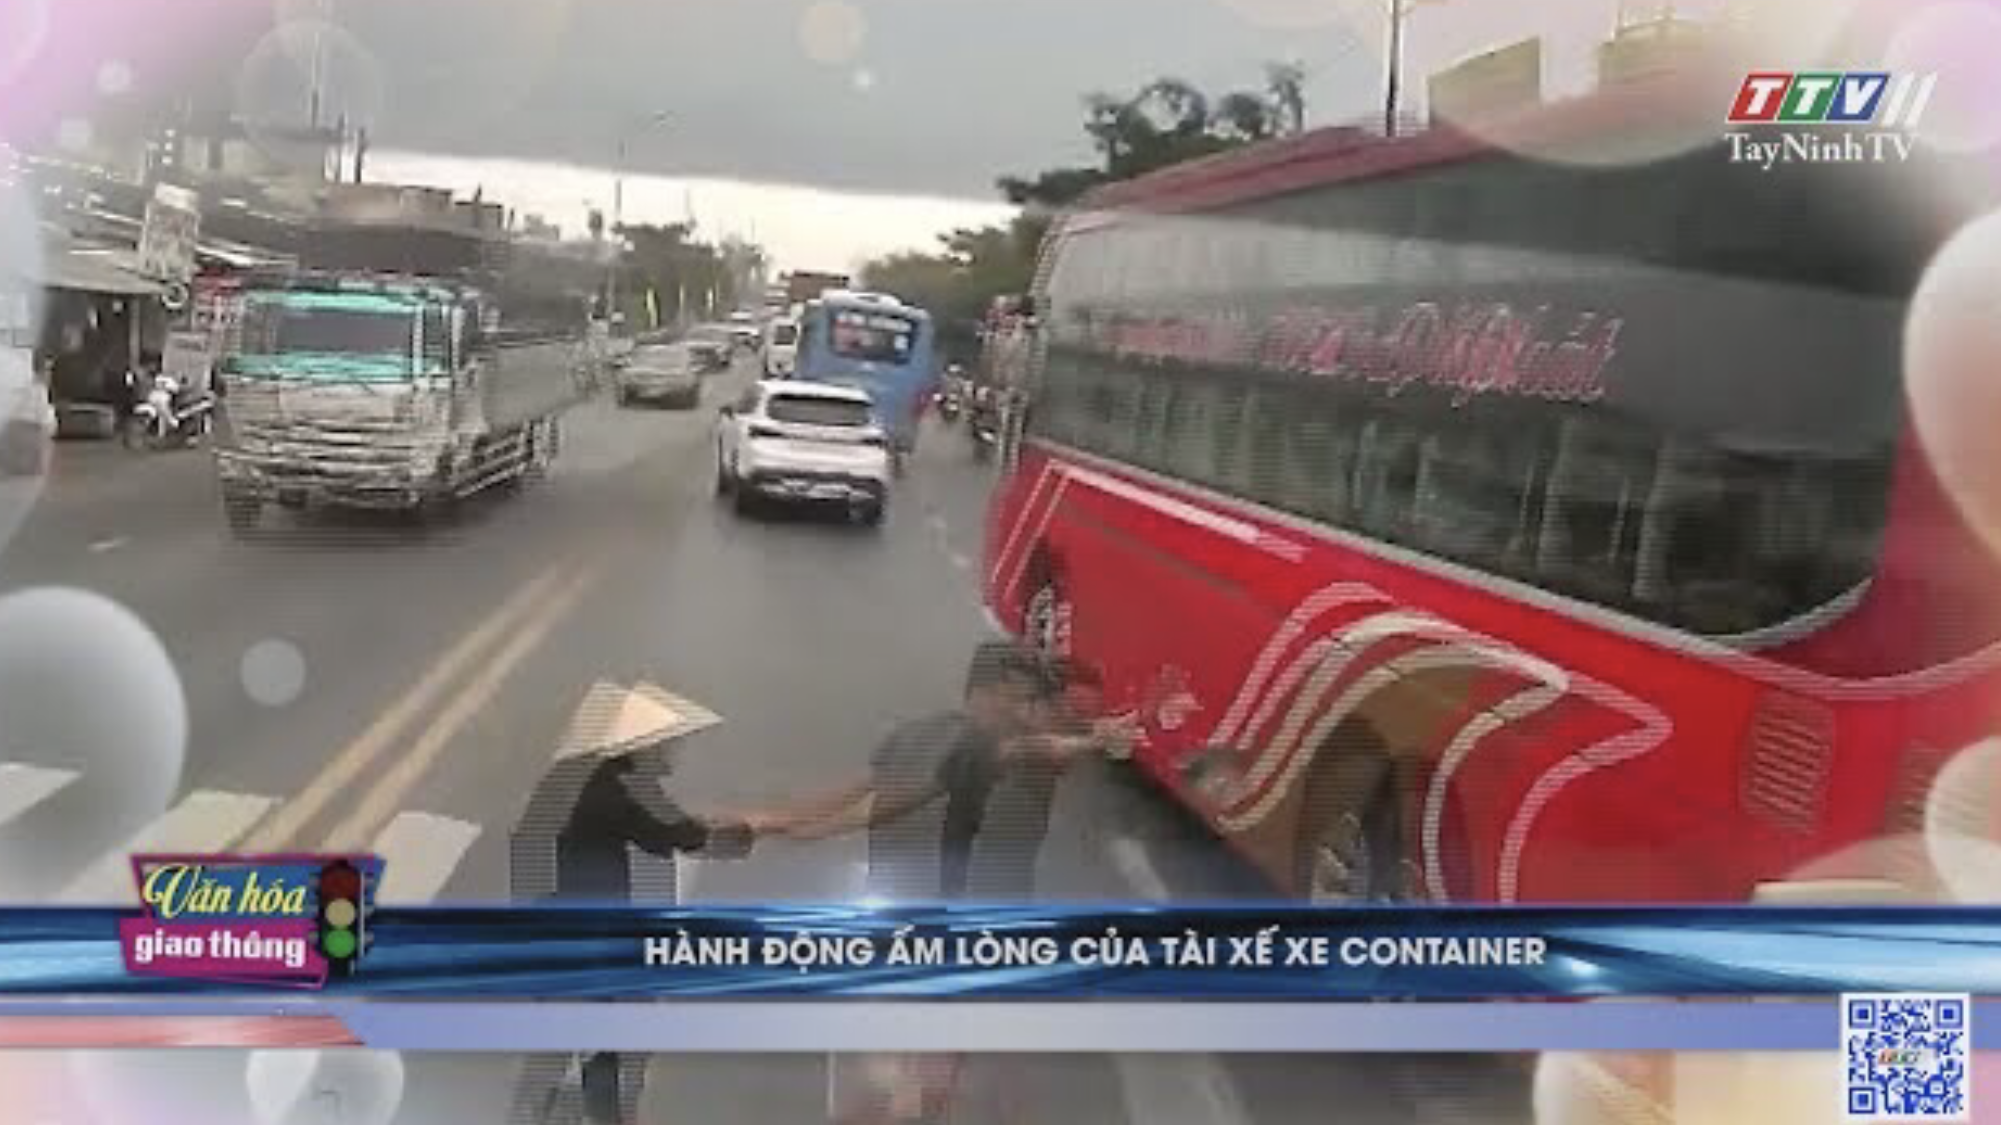 HÀNH ĐỘNG ẤM LÒNG của tài xế XE CONTAINER | Văn hóa giao thông | TayNinhTV